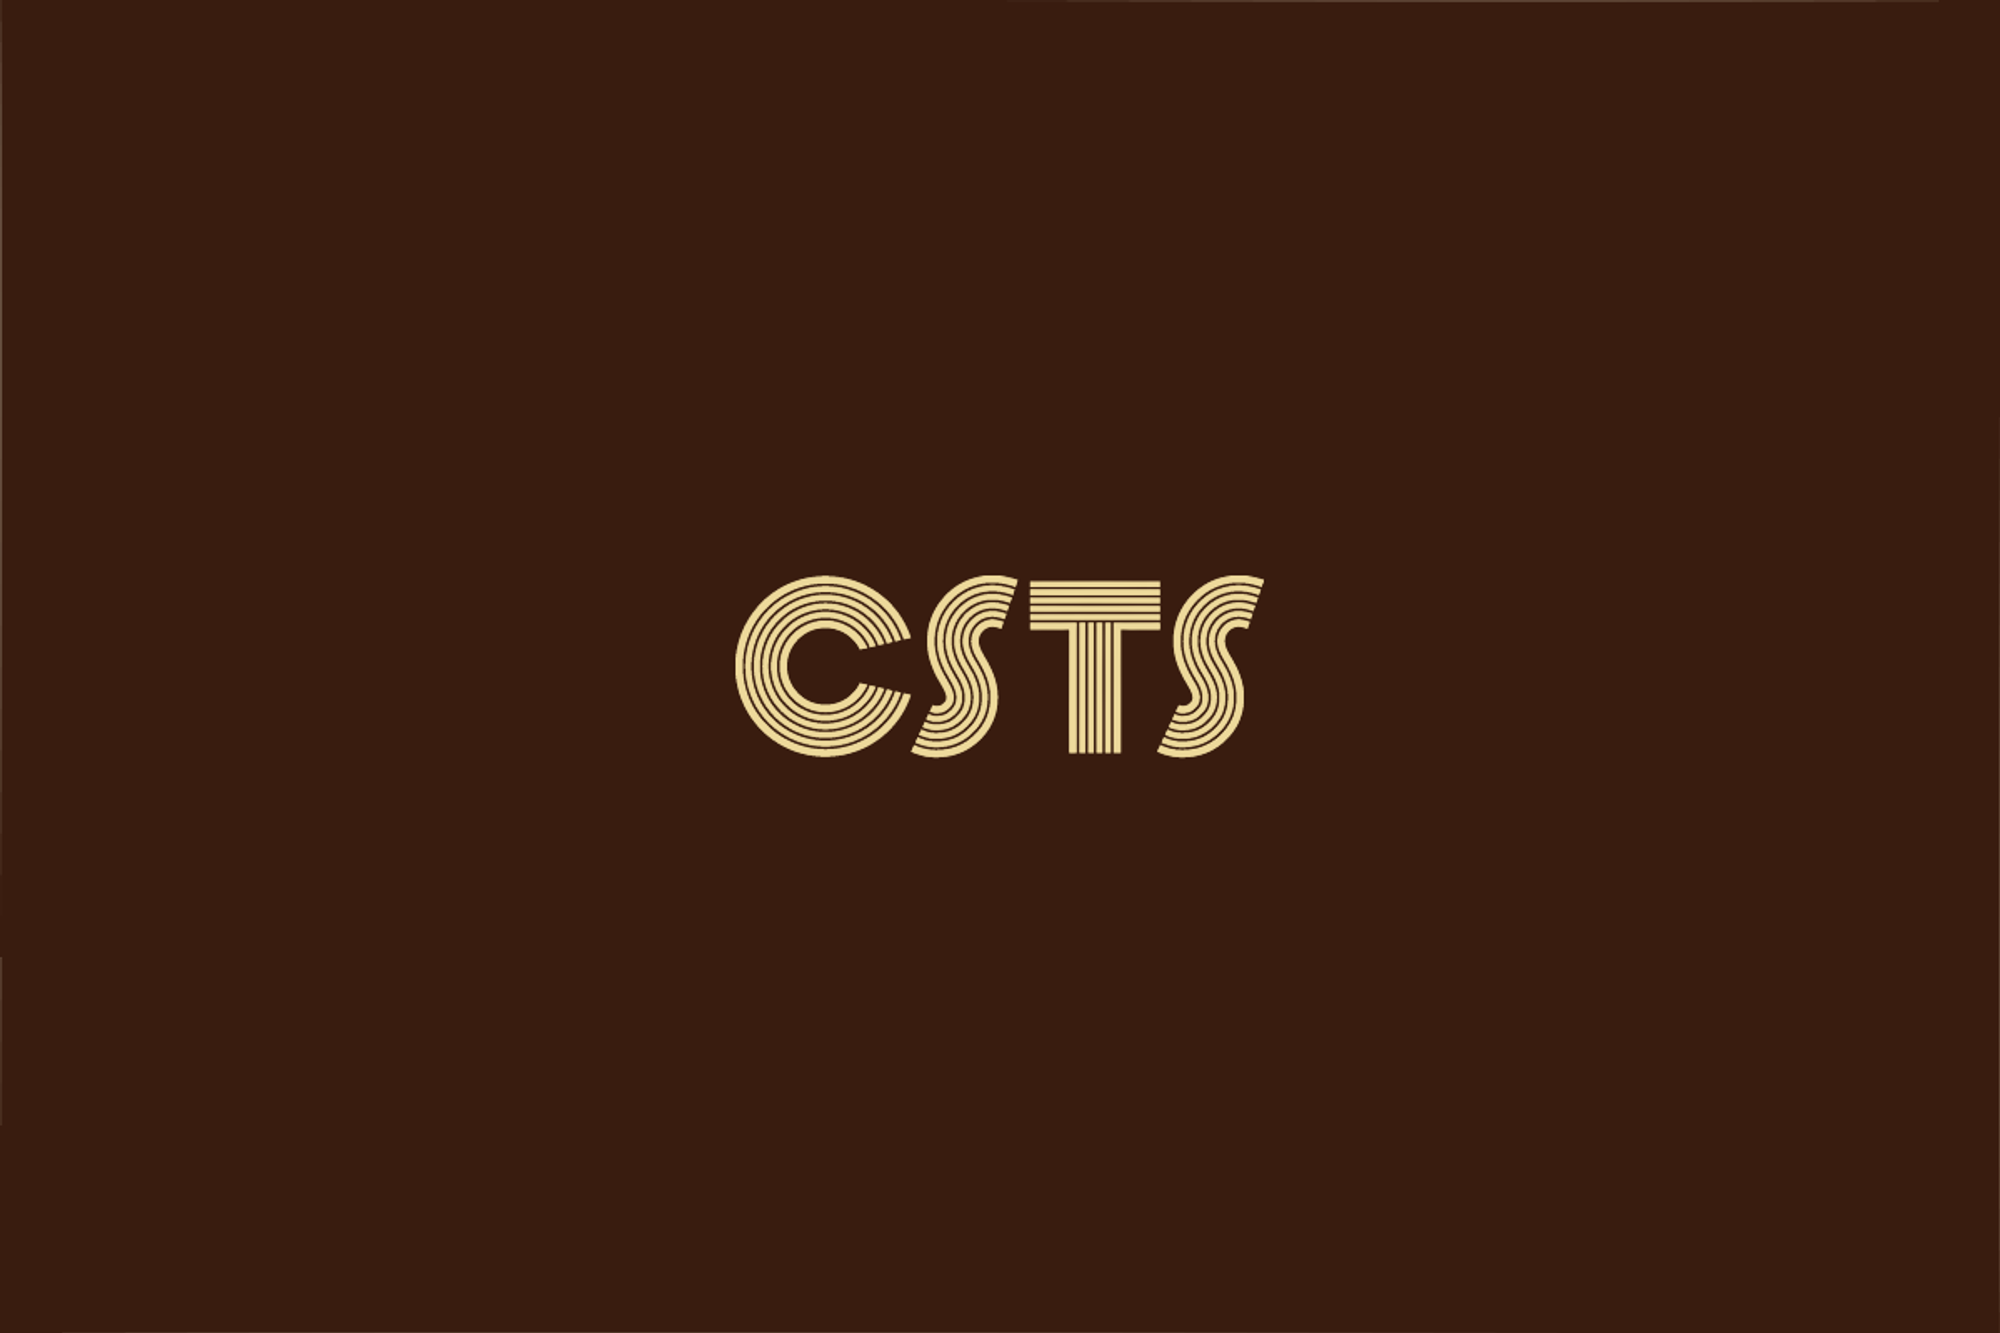 CSTS 세 장 요약 - (2) 테스트 설계 기법